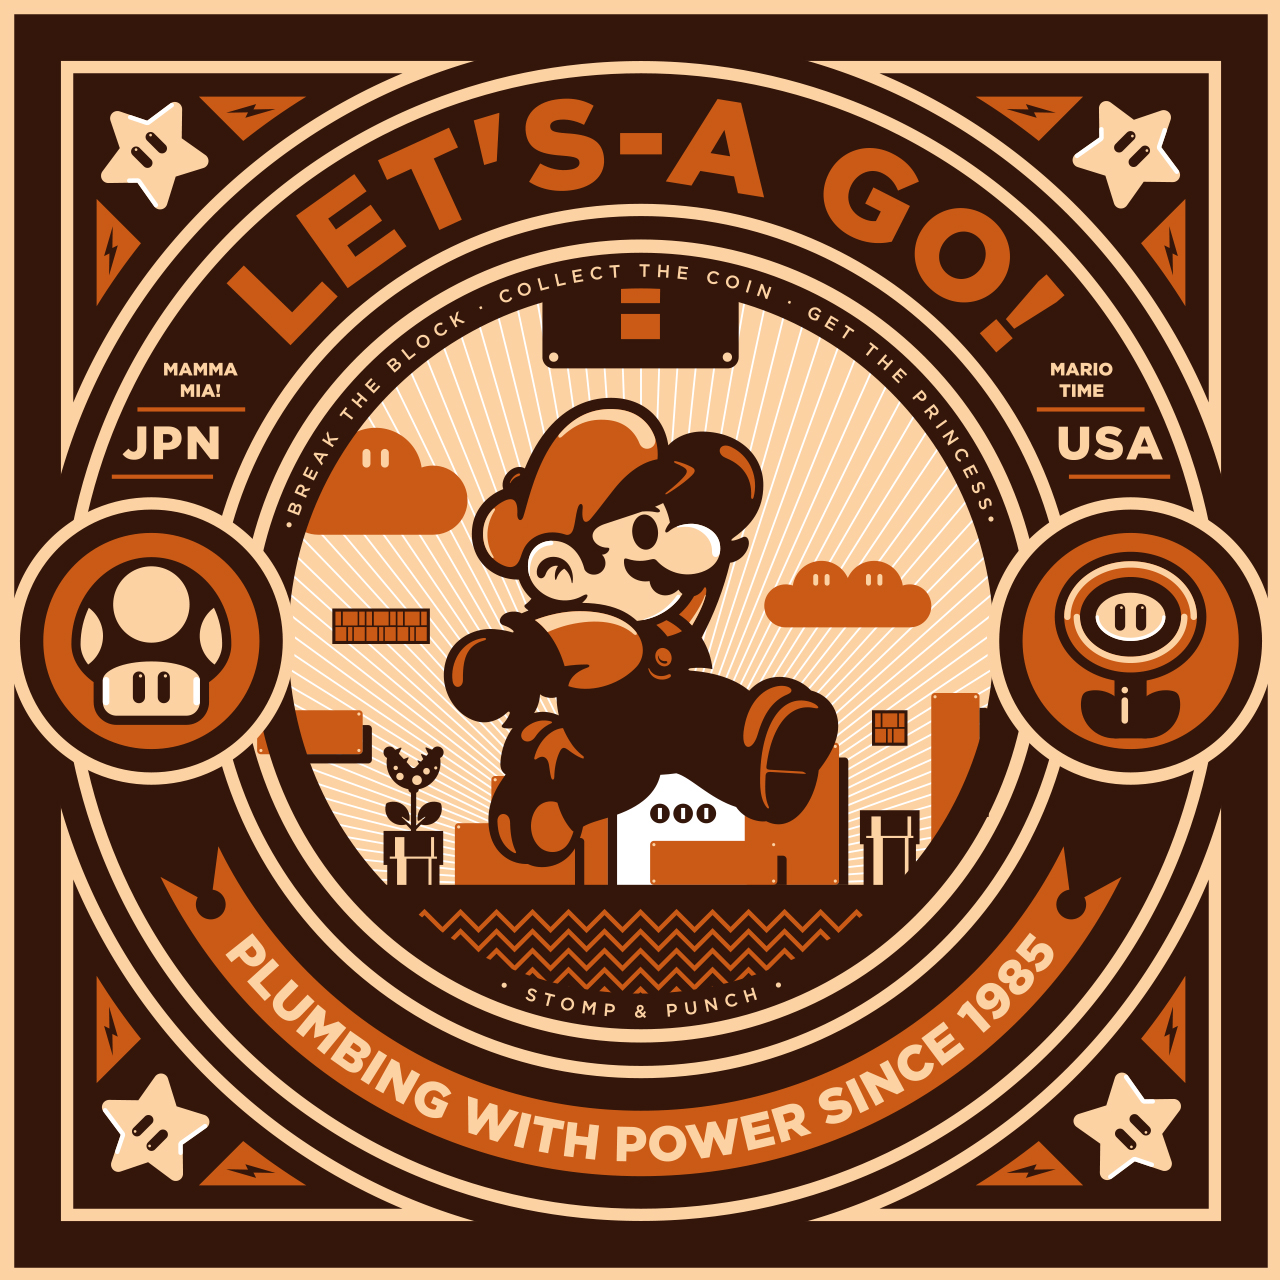 Mamma Mia Mario. Mario - go. Lets a go Mario. No way mamma Mia Mario. Power since